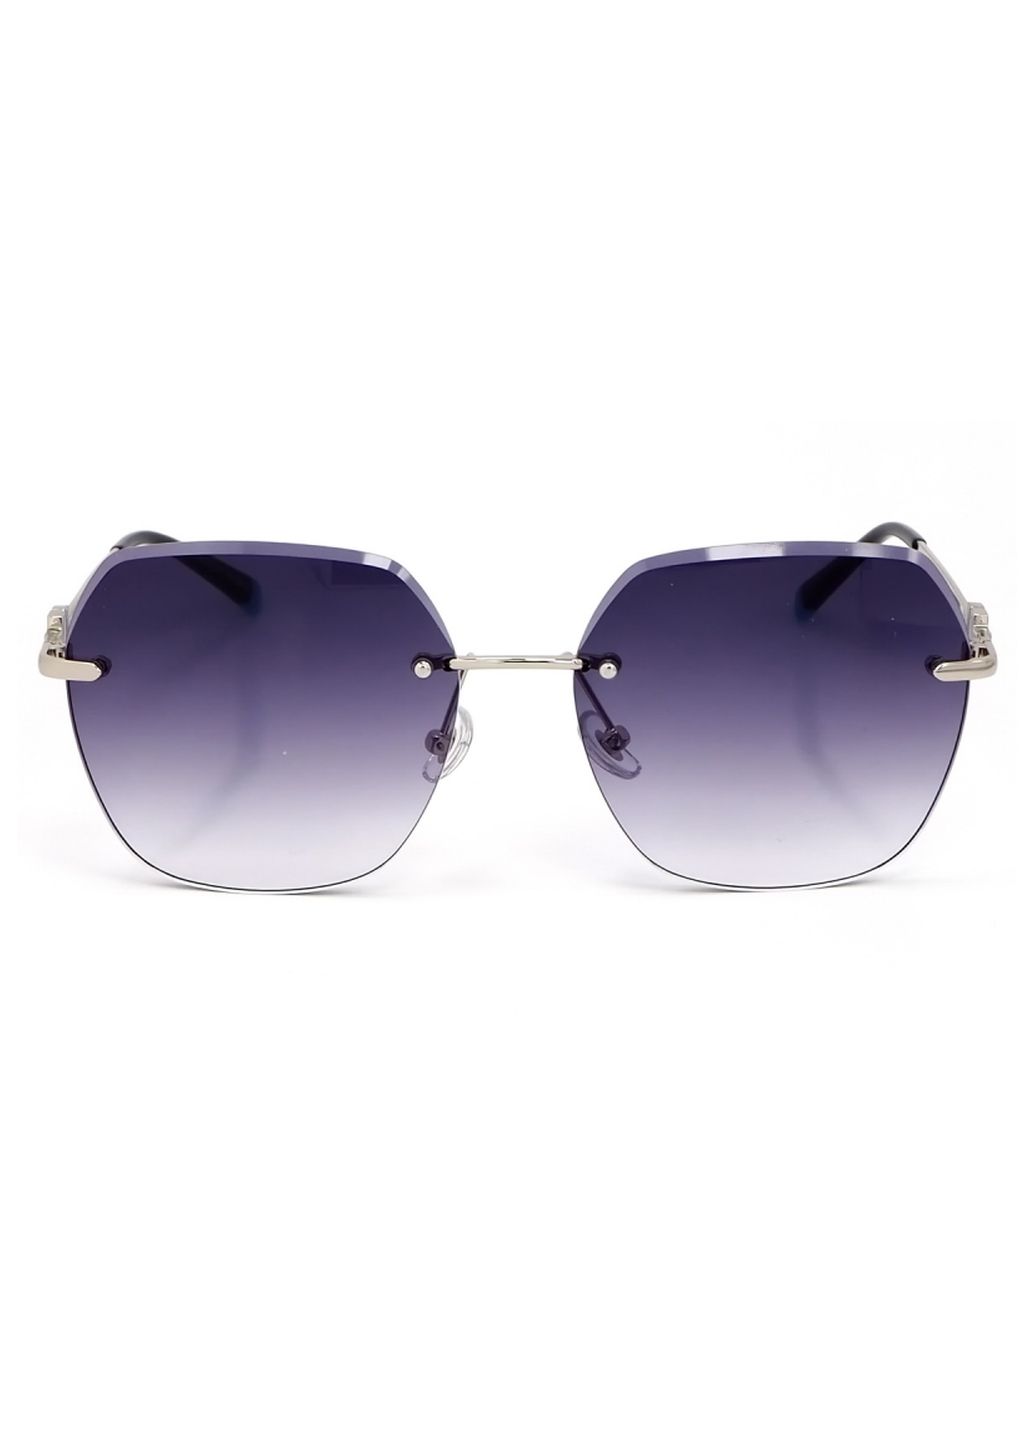 Купить Женские солнцезащитные очки Merlini с поляризацией S31837 117100 - Серый в интернет-магазине